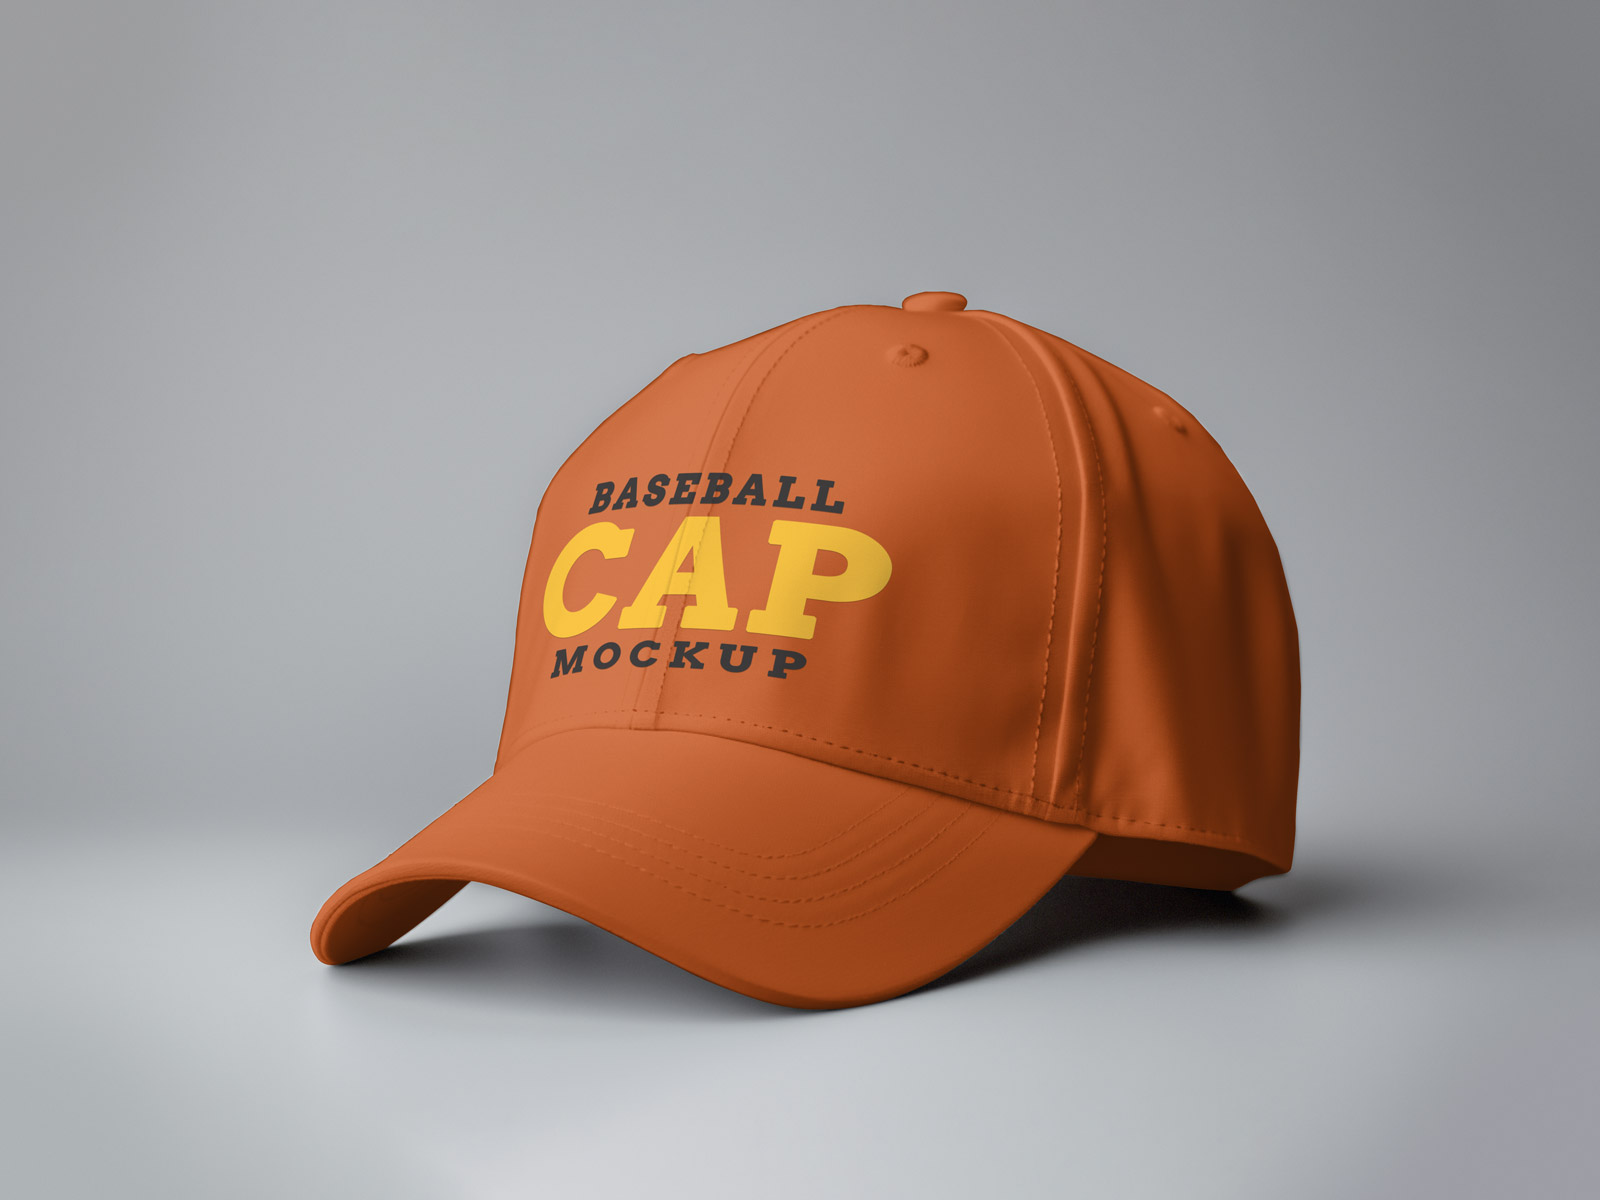 Baseball Cap Mockup template